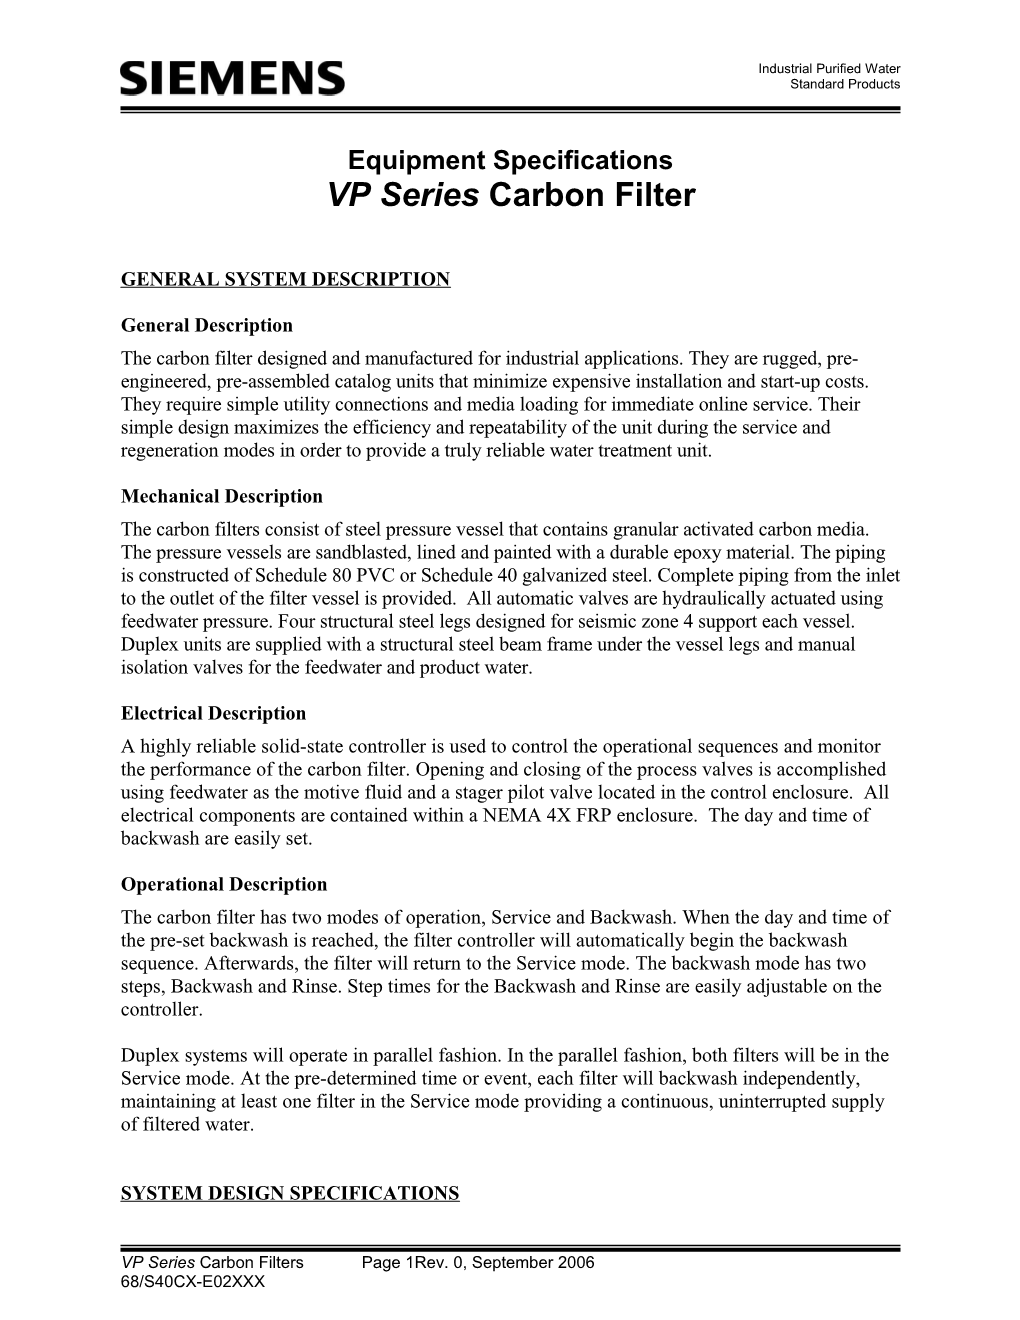 VP Series Multimedia Filter Specifications